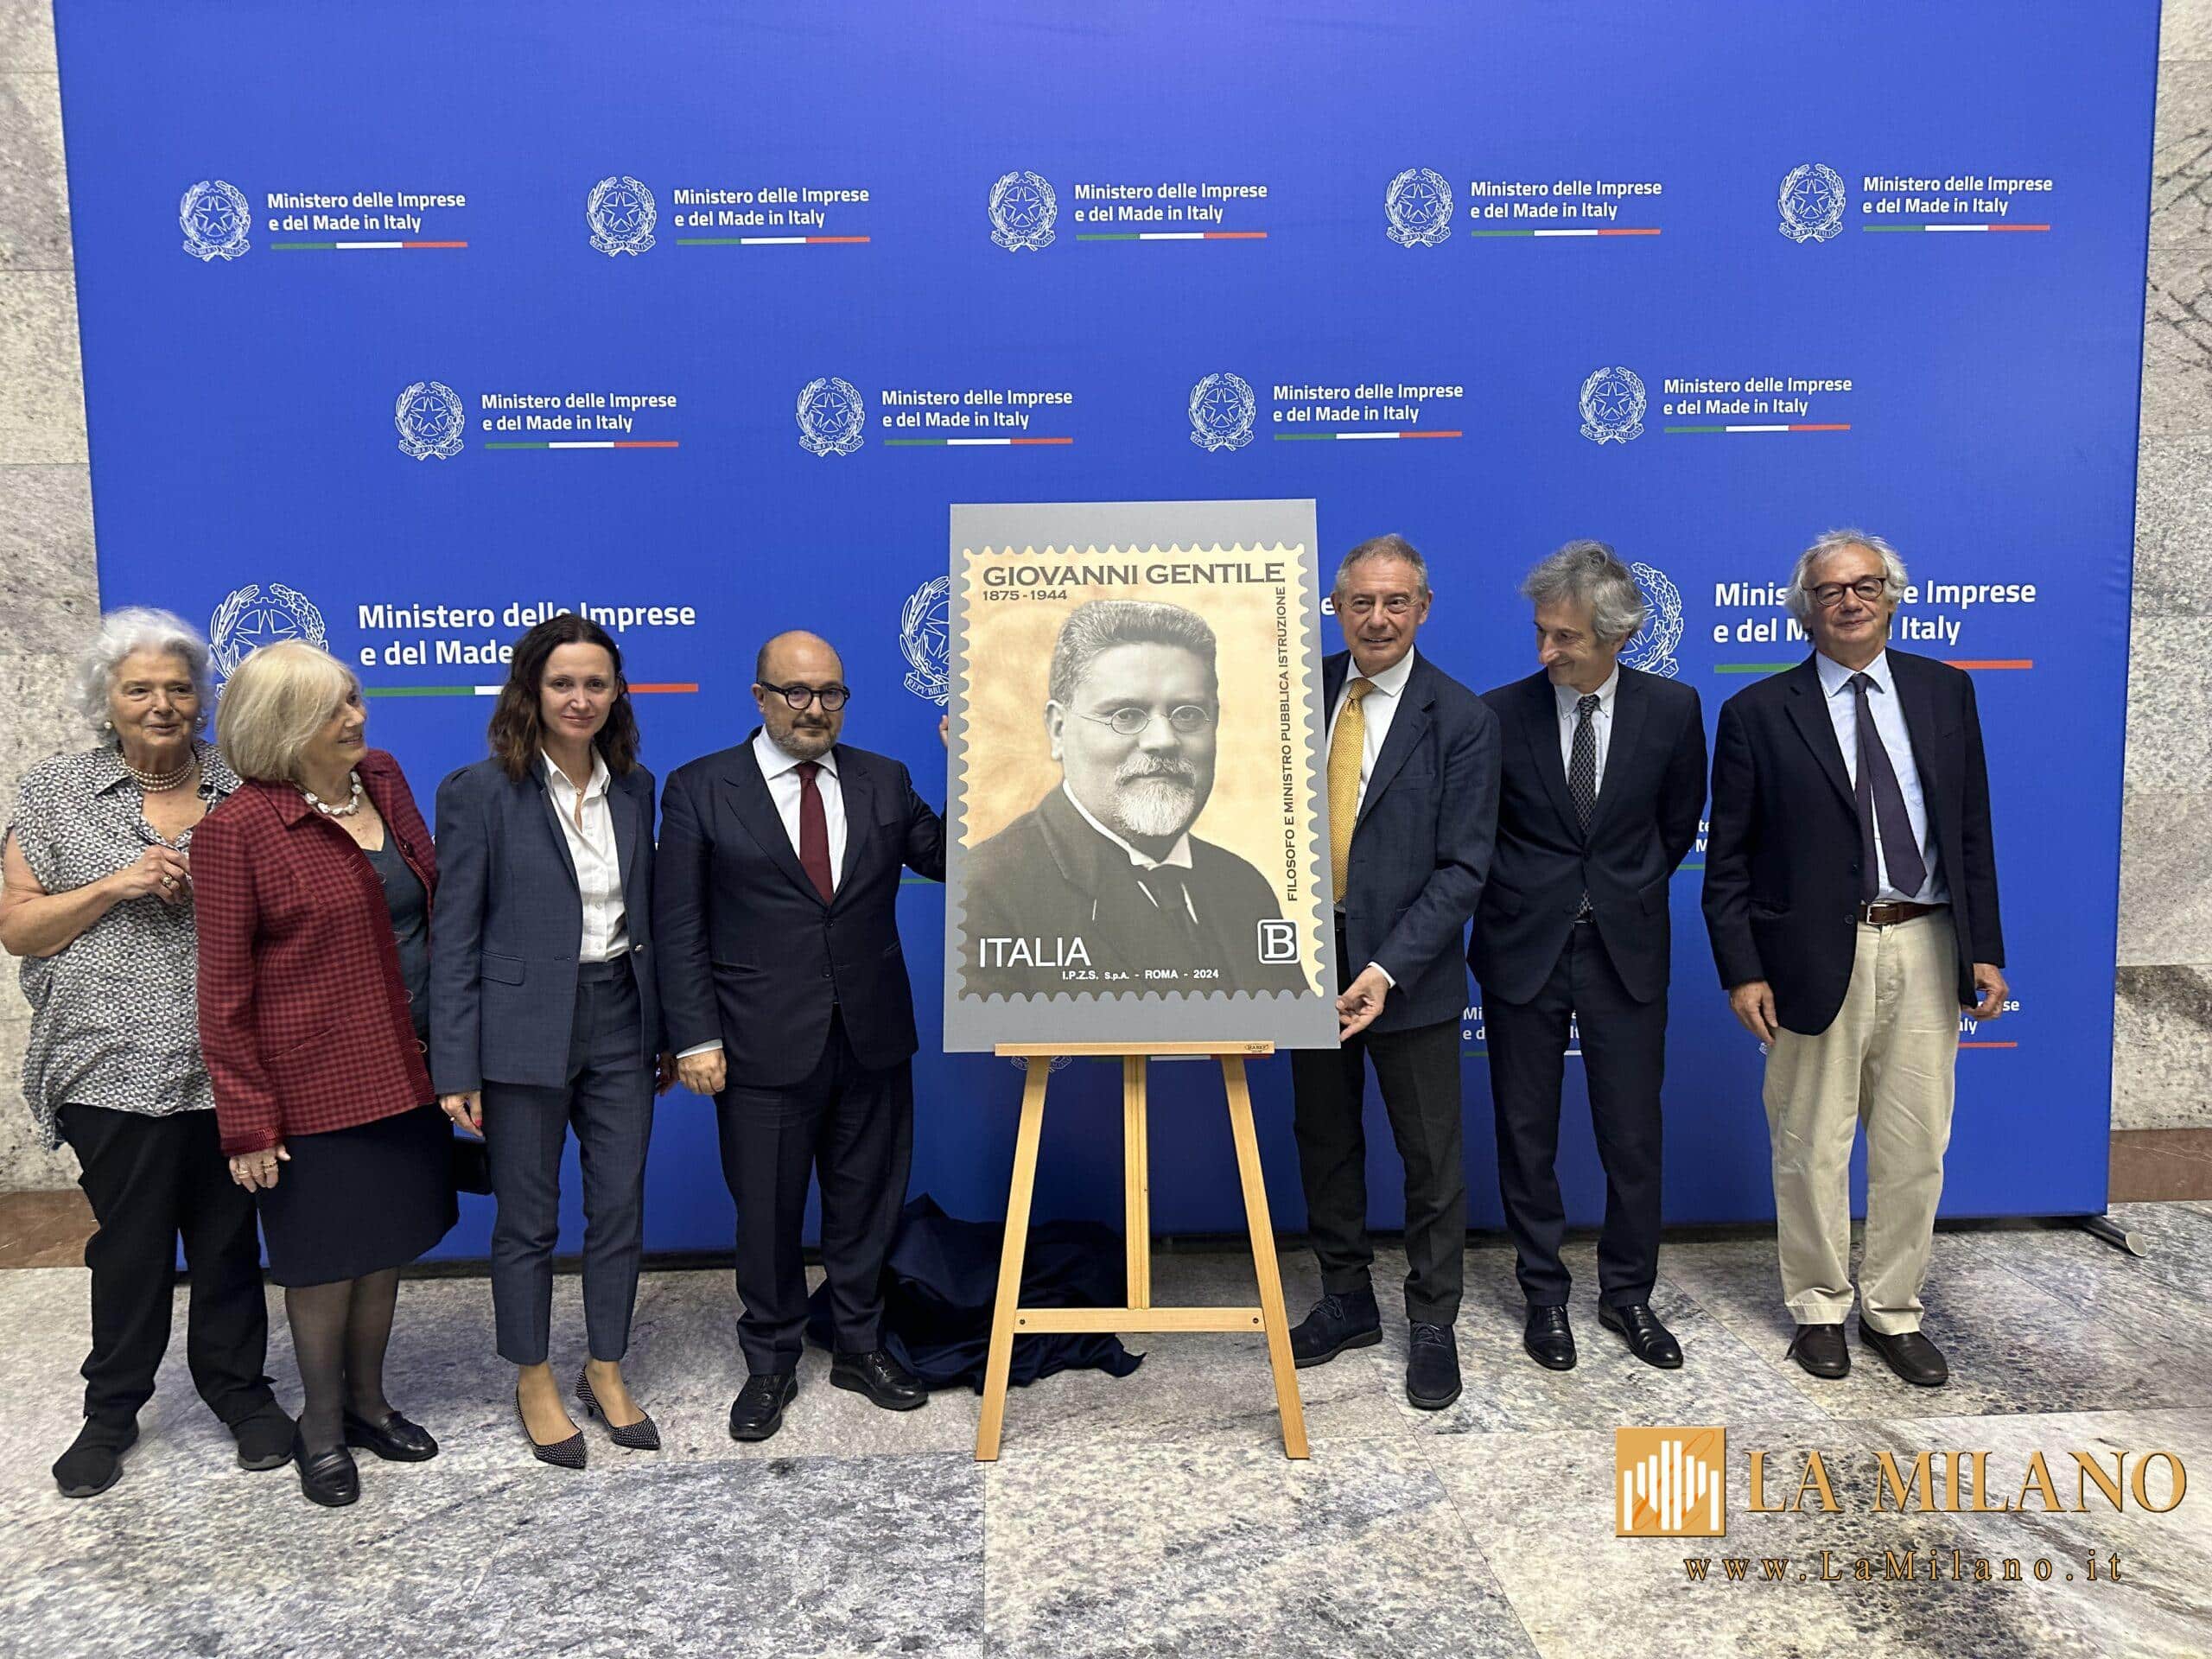 Roma. Presentato il francobollo commemorativo di Giovanni Gentile, nell'80° anniversario della scomparsa. Presente il ministro della Cultura, Gennaro Sangiuliano.